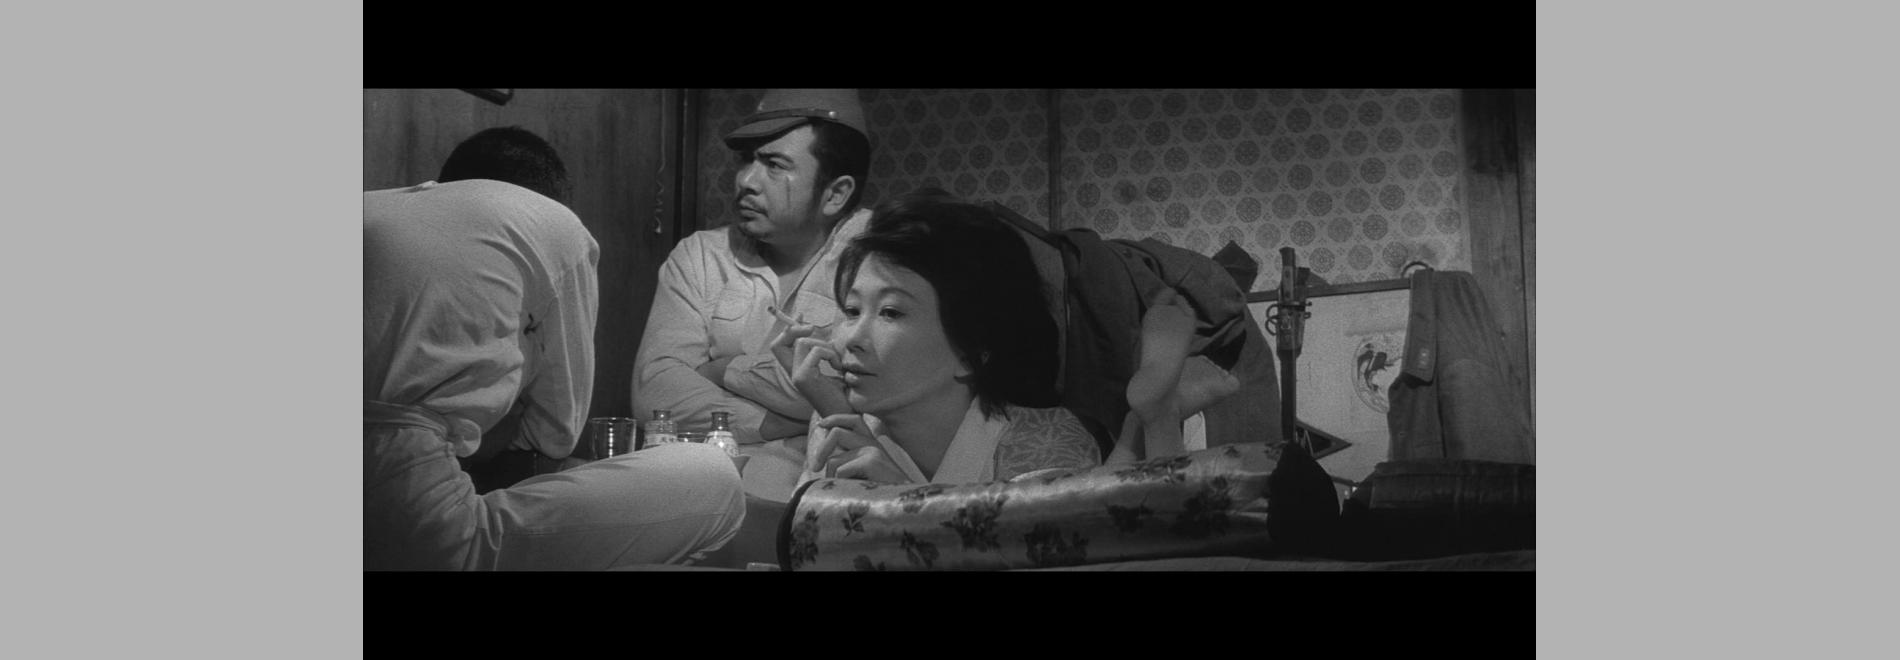 Heitai yakuza / Soldat pinxo (Yasuzô Masumura, 1965)